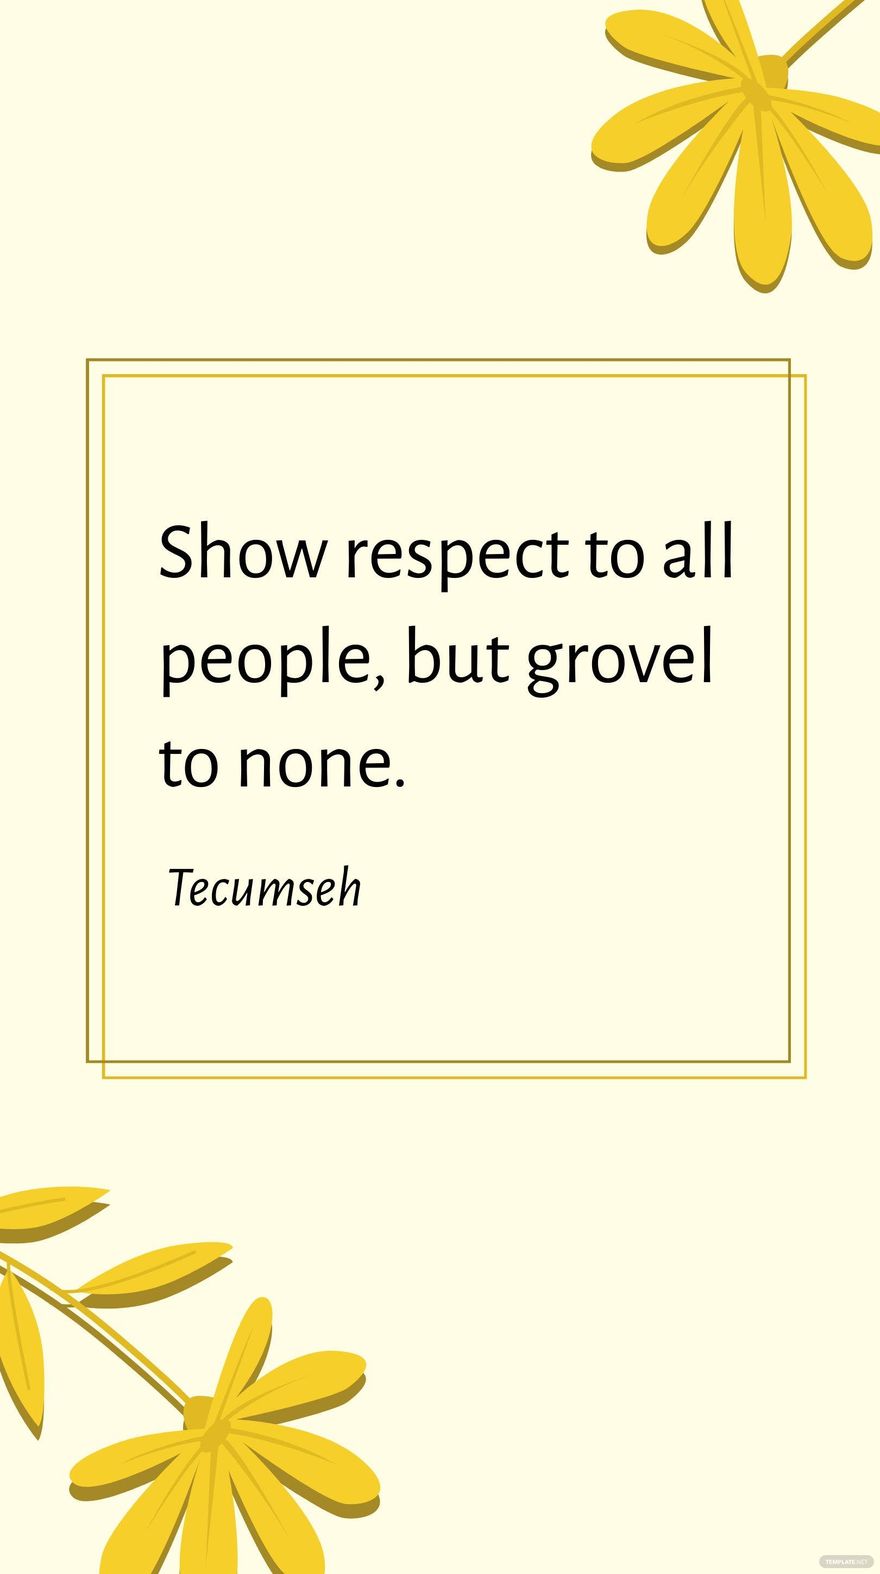 tecumseh quotes